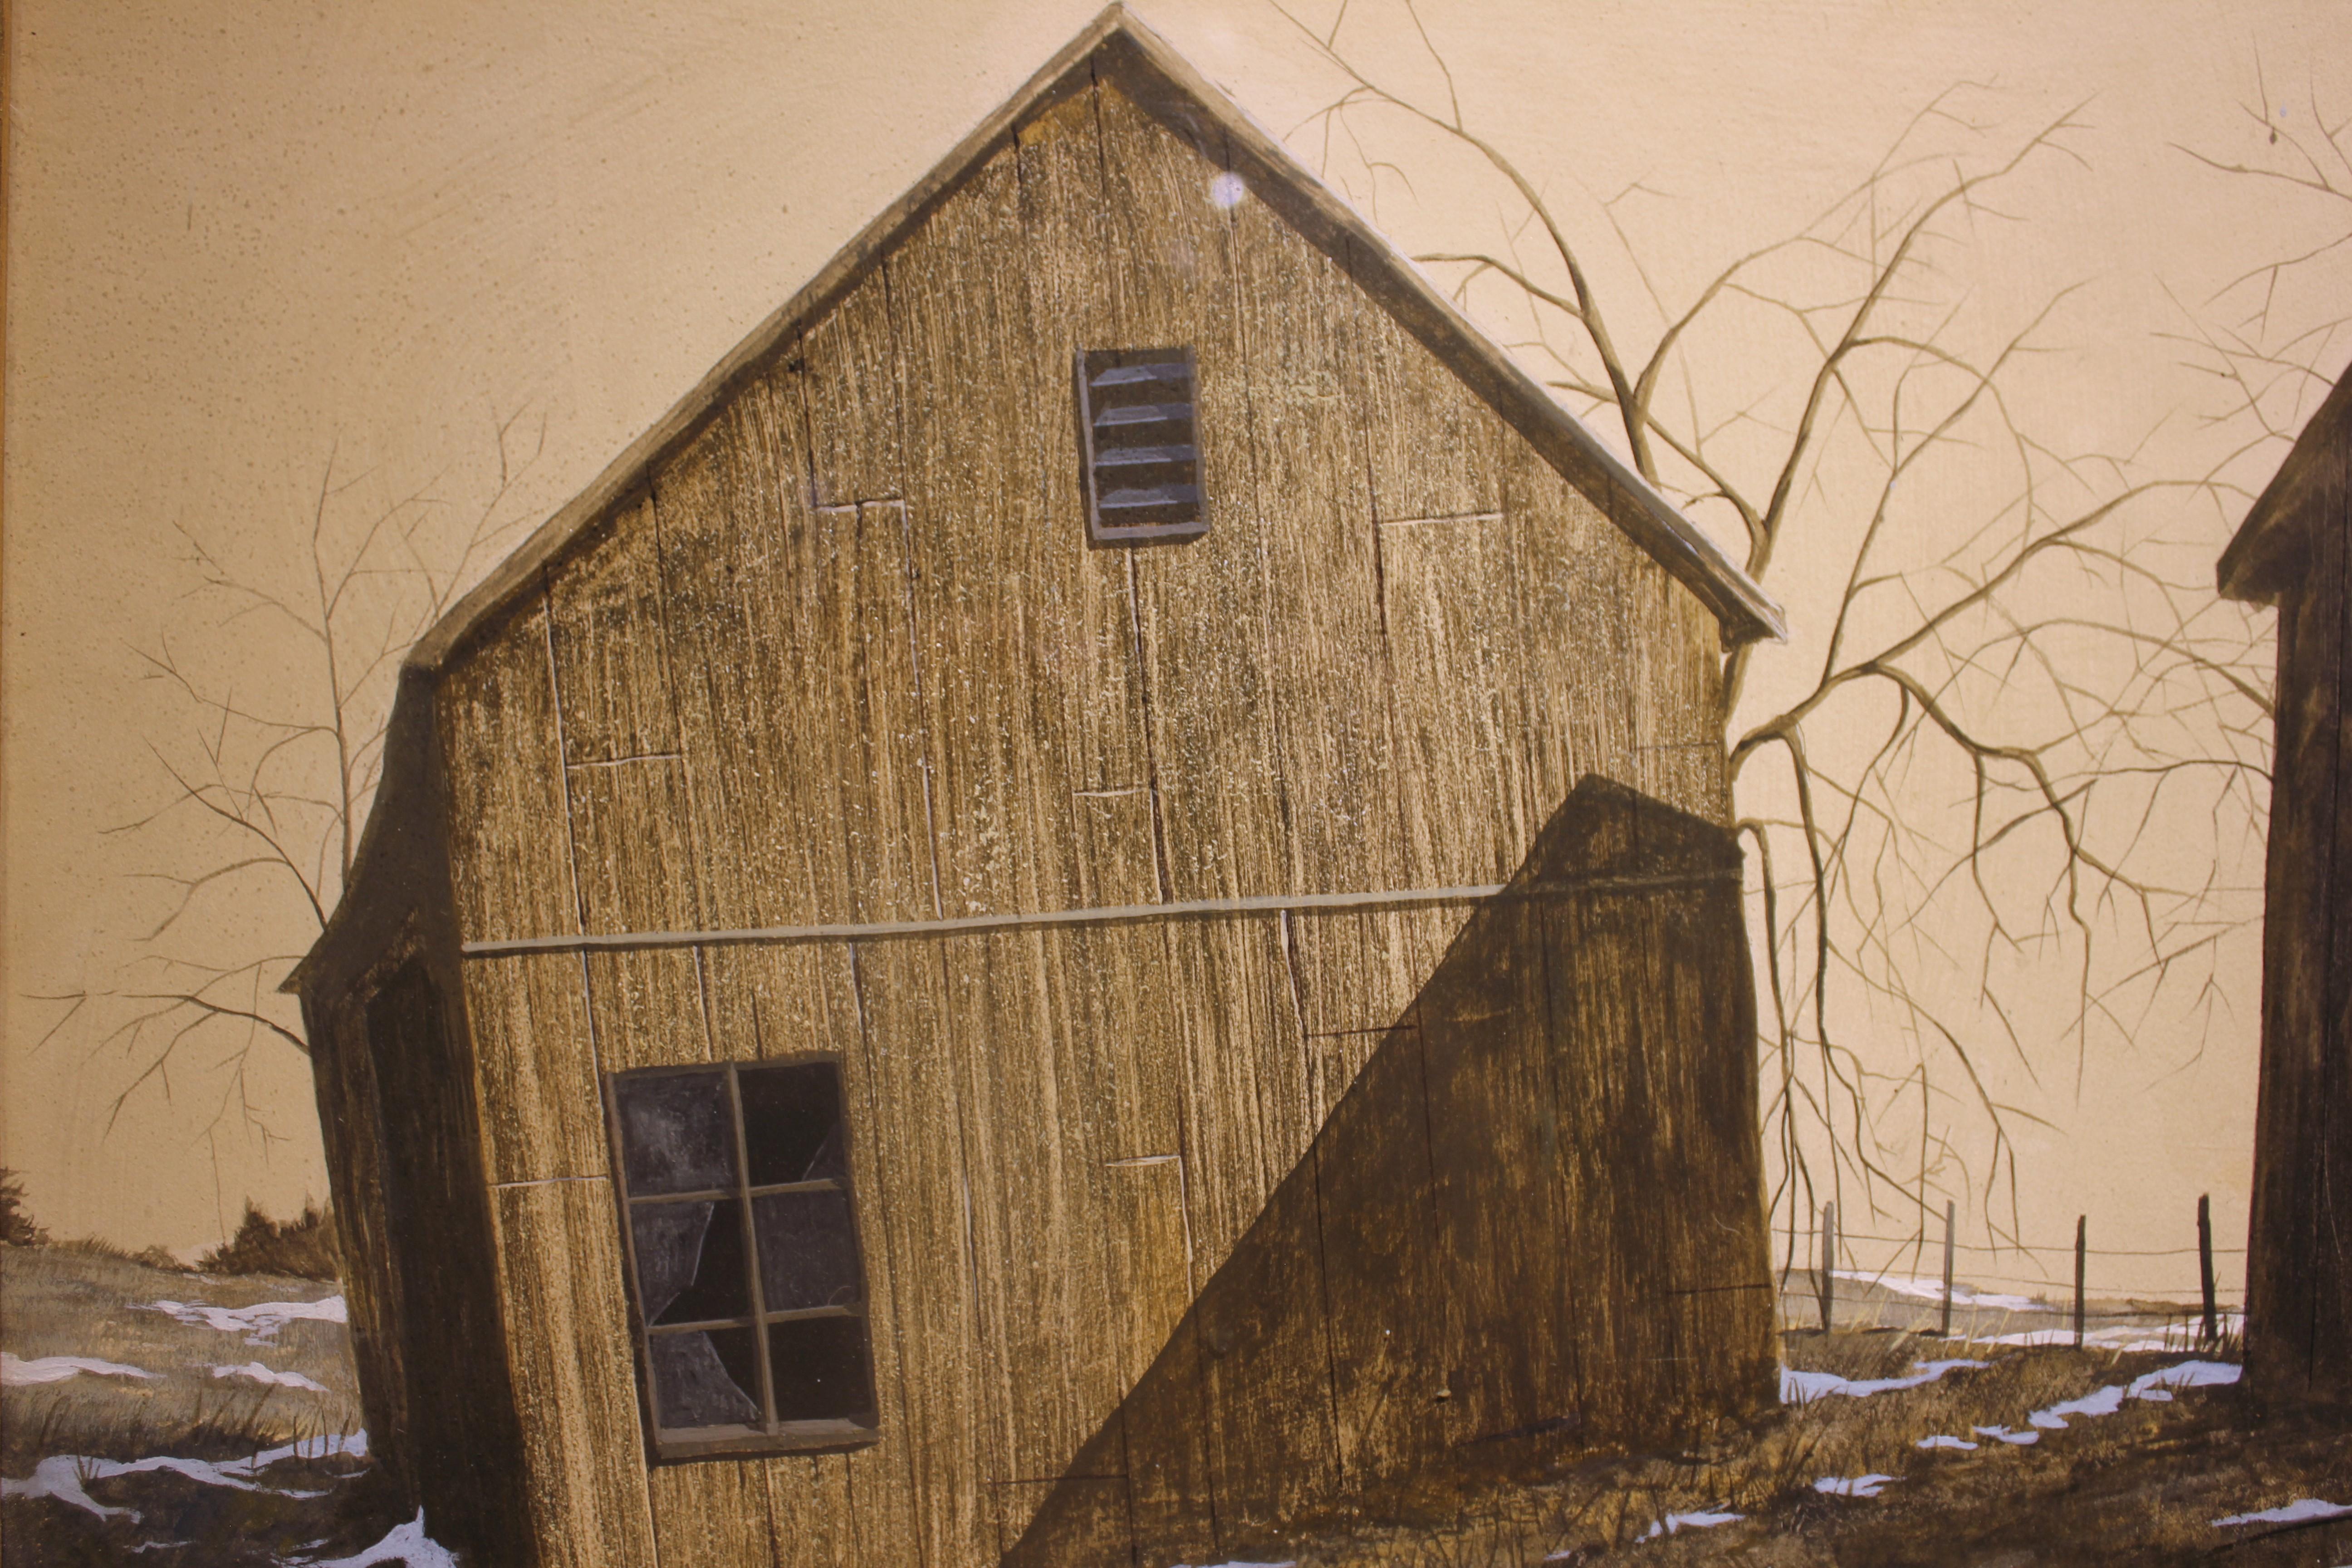 Winter Farm Landscape with a Barn - Art by John W. Wade